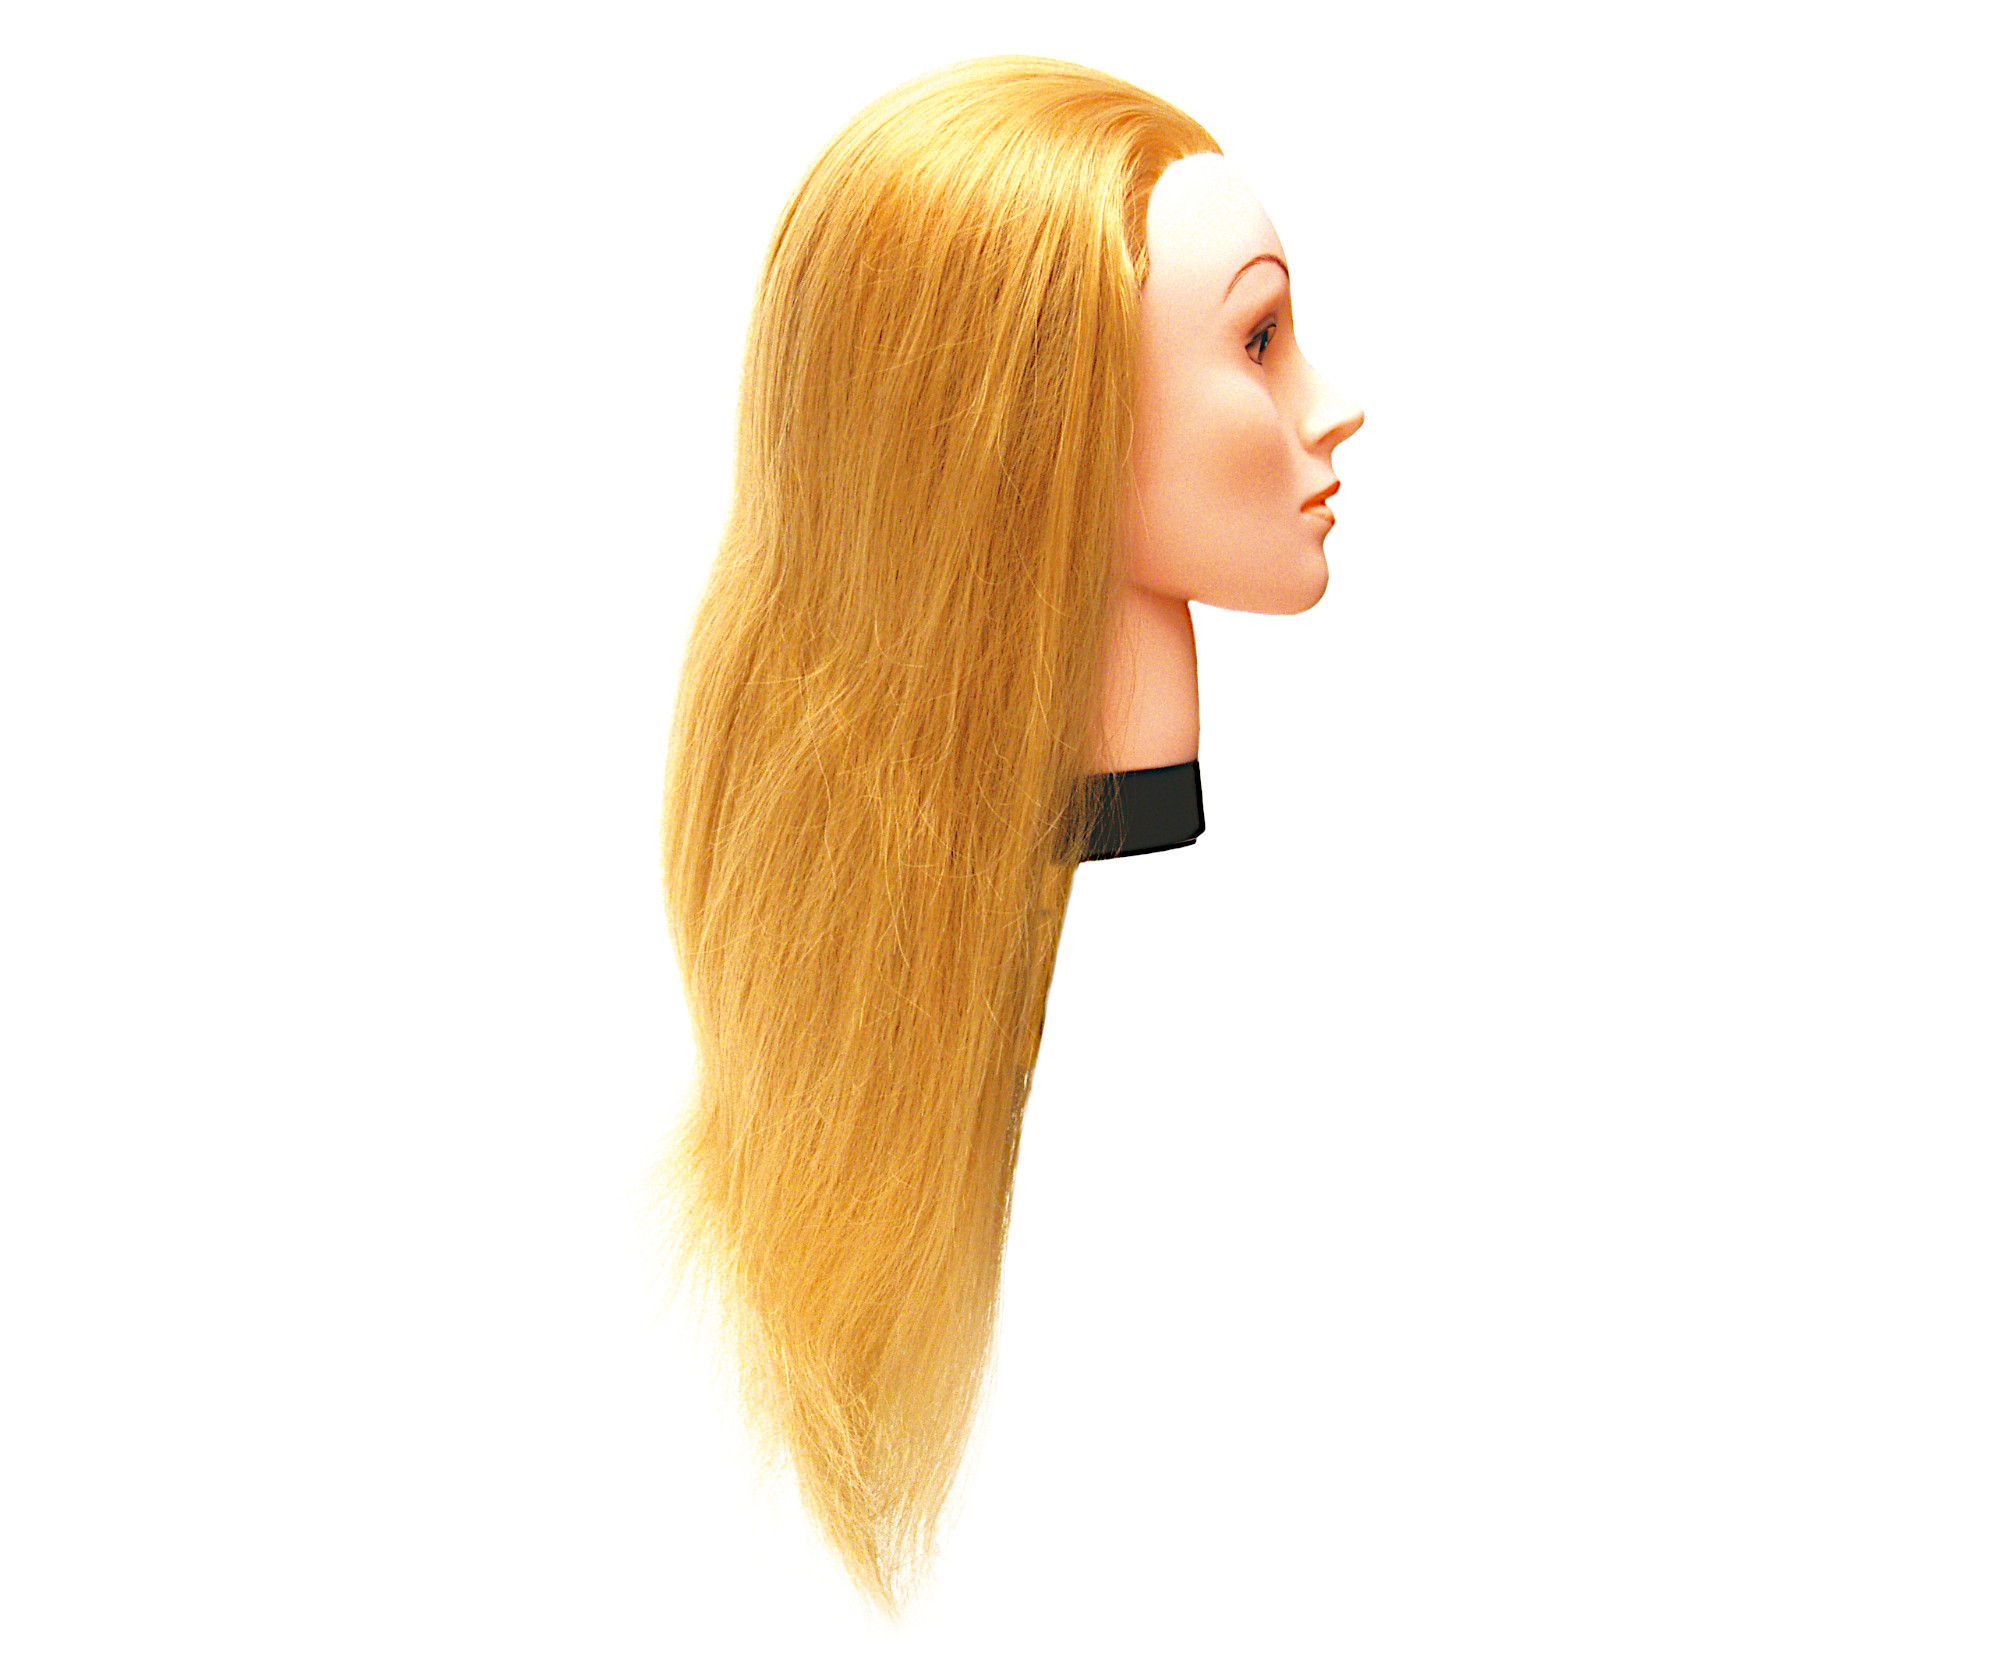 Cvičná hlava s umělými vlasy Eurostil Profesional - světlá blond, 45-50 cm (02544) + DÁREK ZDARMA